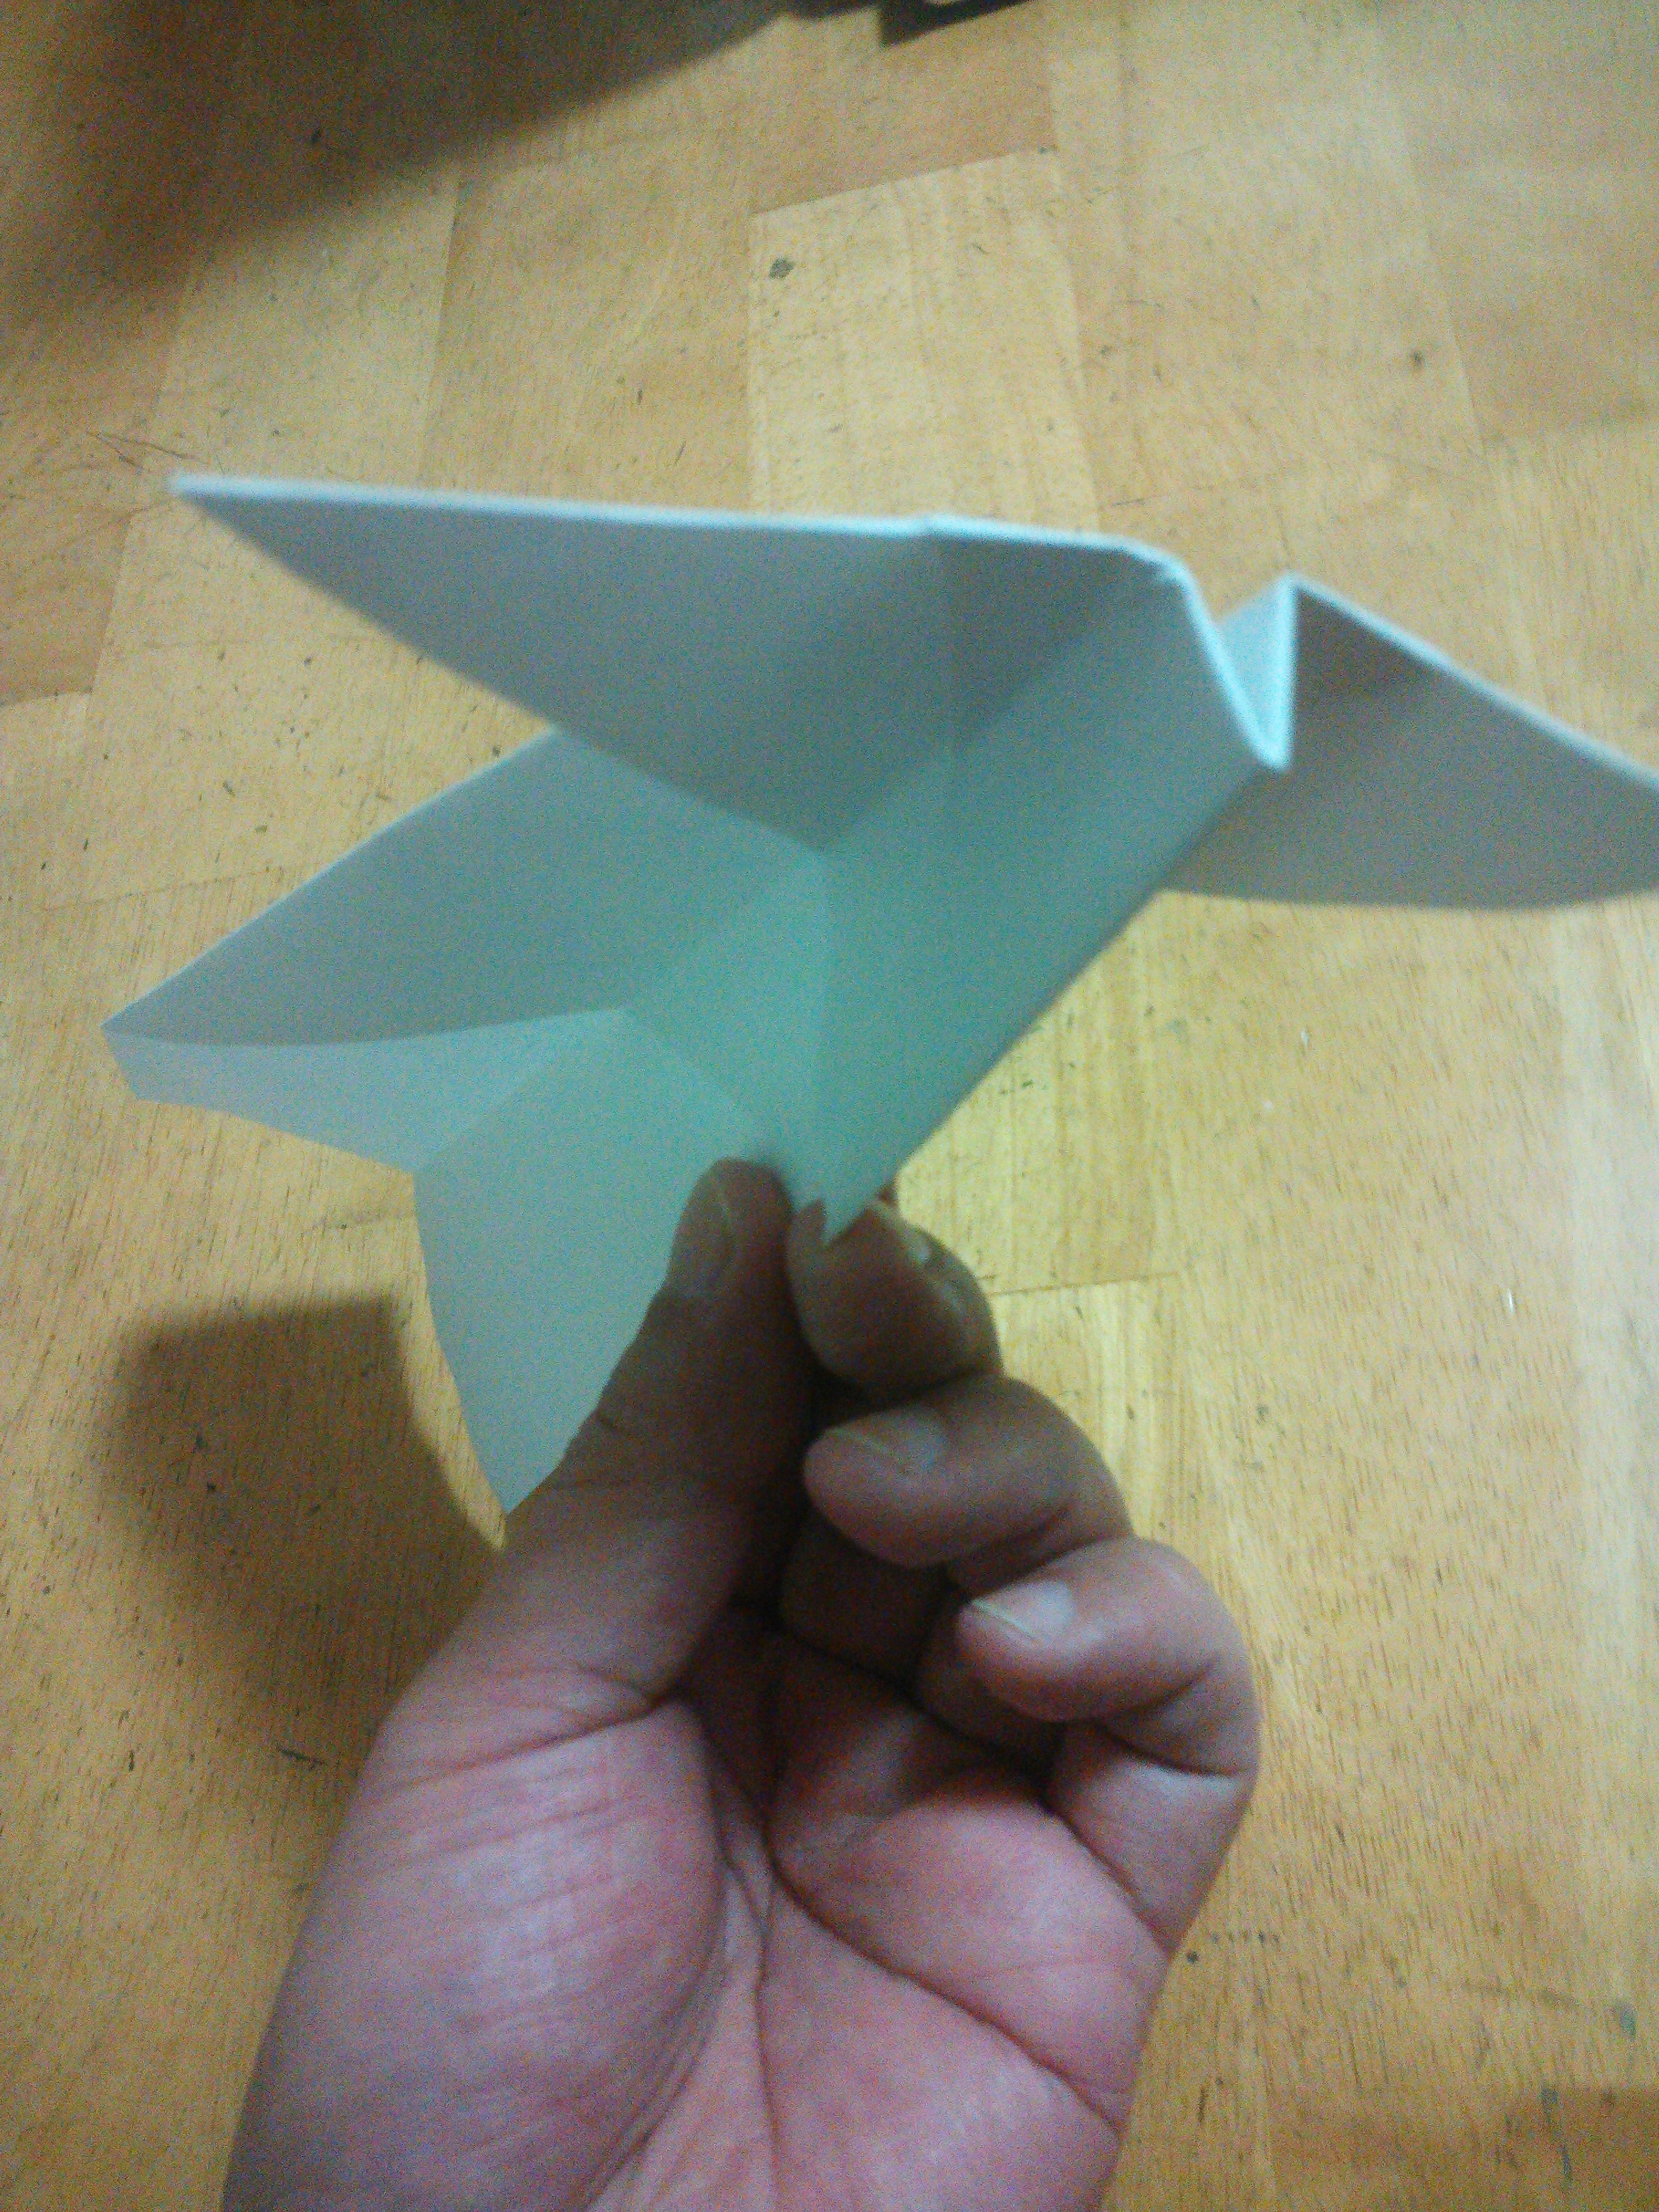 折り紙でめっちゃよく飛ぶ最強 紙飛行機 の作り方４選 意外に簡単 暮らし の